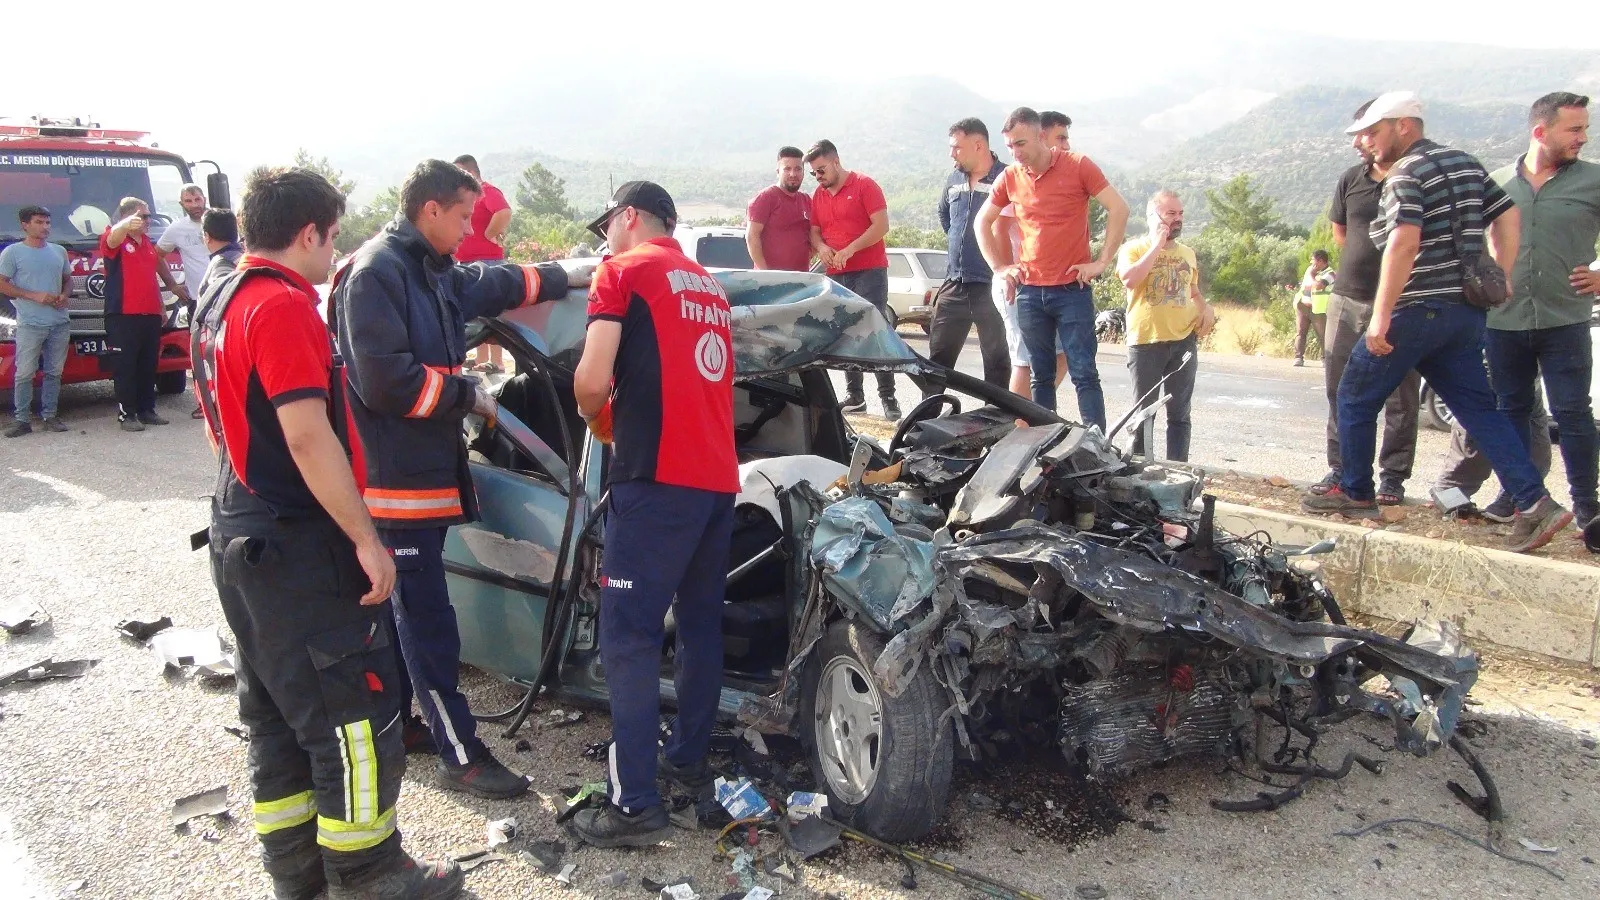 Mersin'de Otobüslerin Karıştığı Zincirleme Kaza 2 Ölü, 35 Yaralı (2)